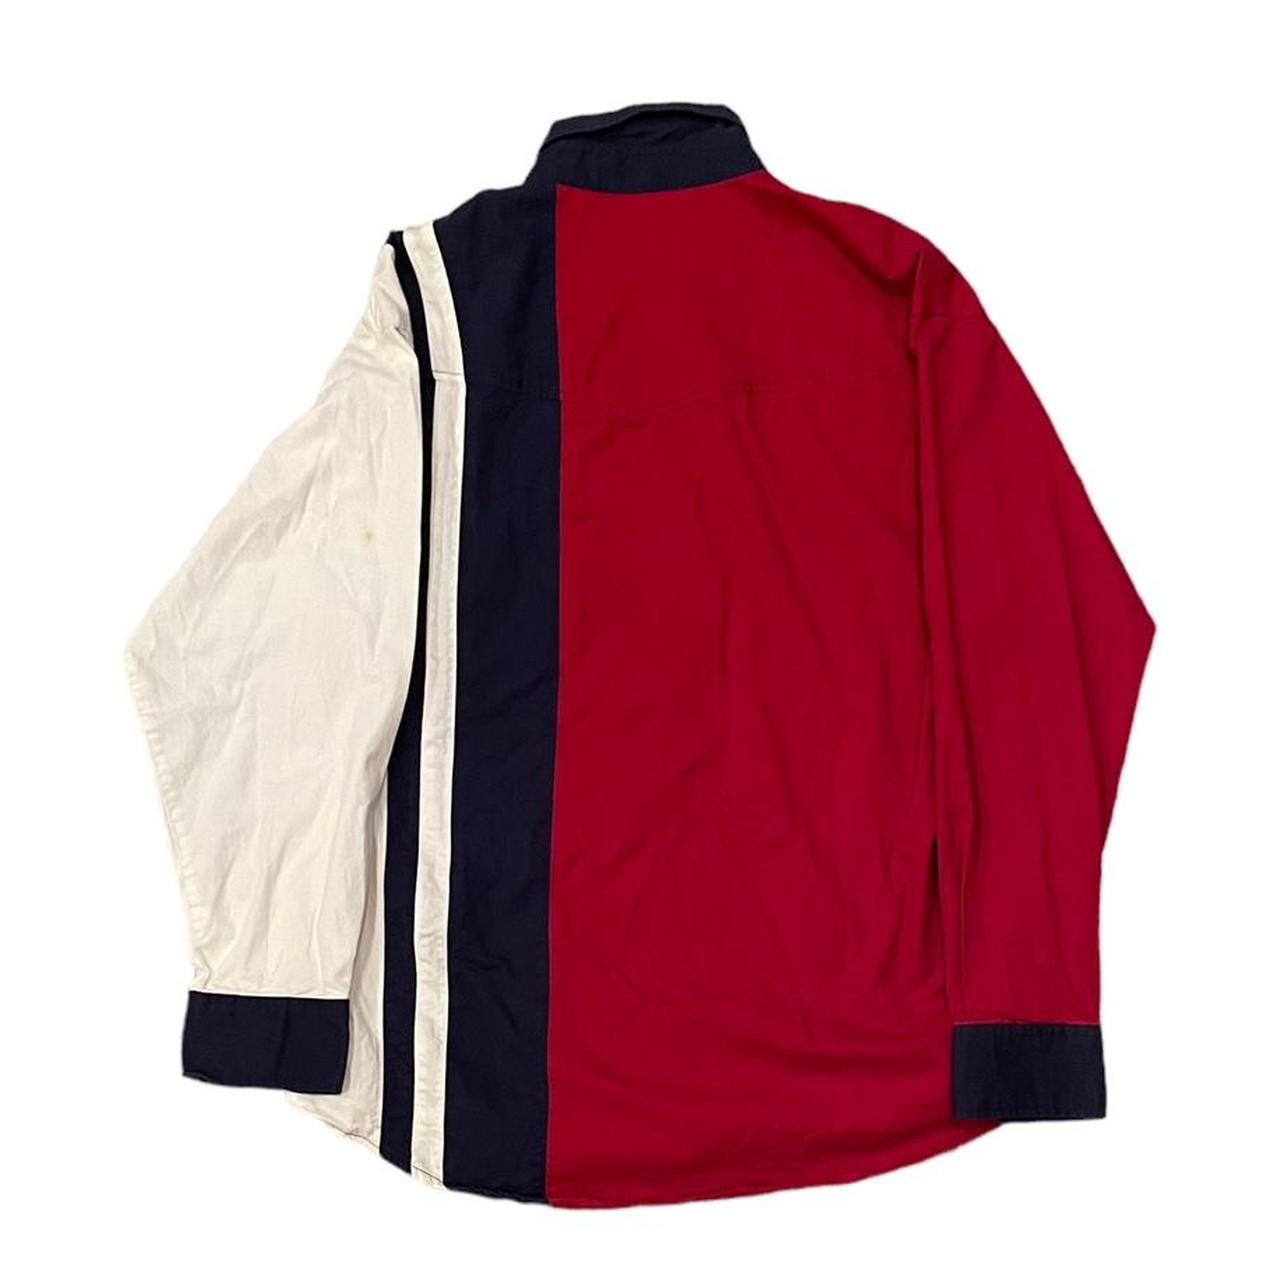 Vintage 90s Wrangler Button Up Western Shirt Red... - Depop